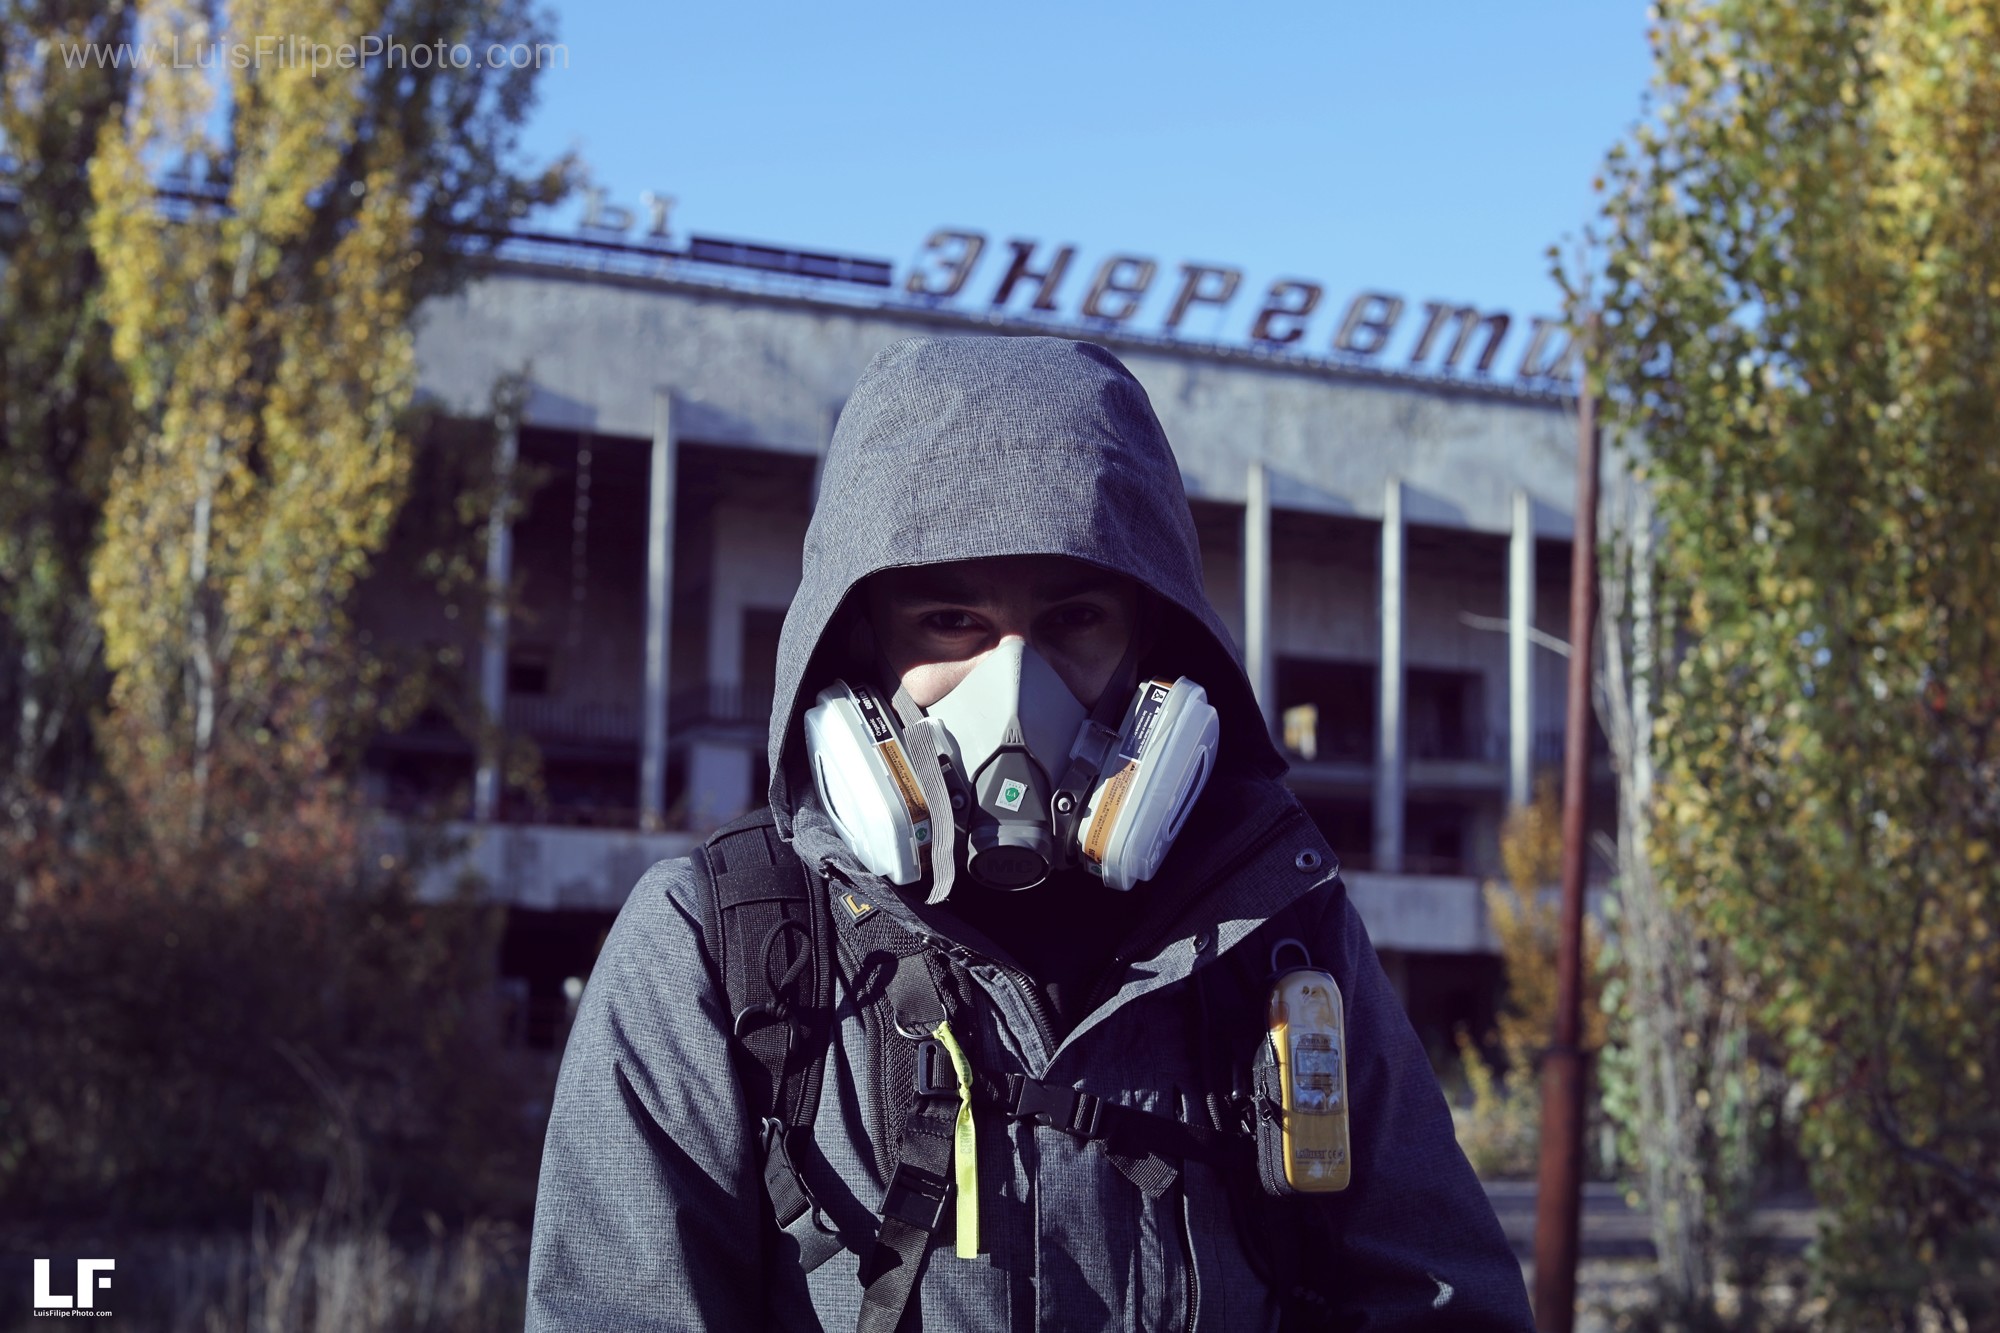 viaje fotografico a Chernobyl, www.luisfilipephoto.com 